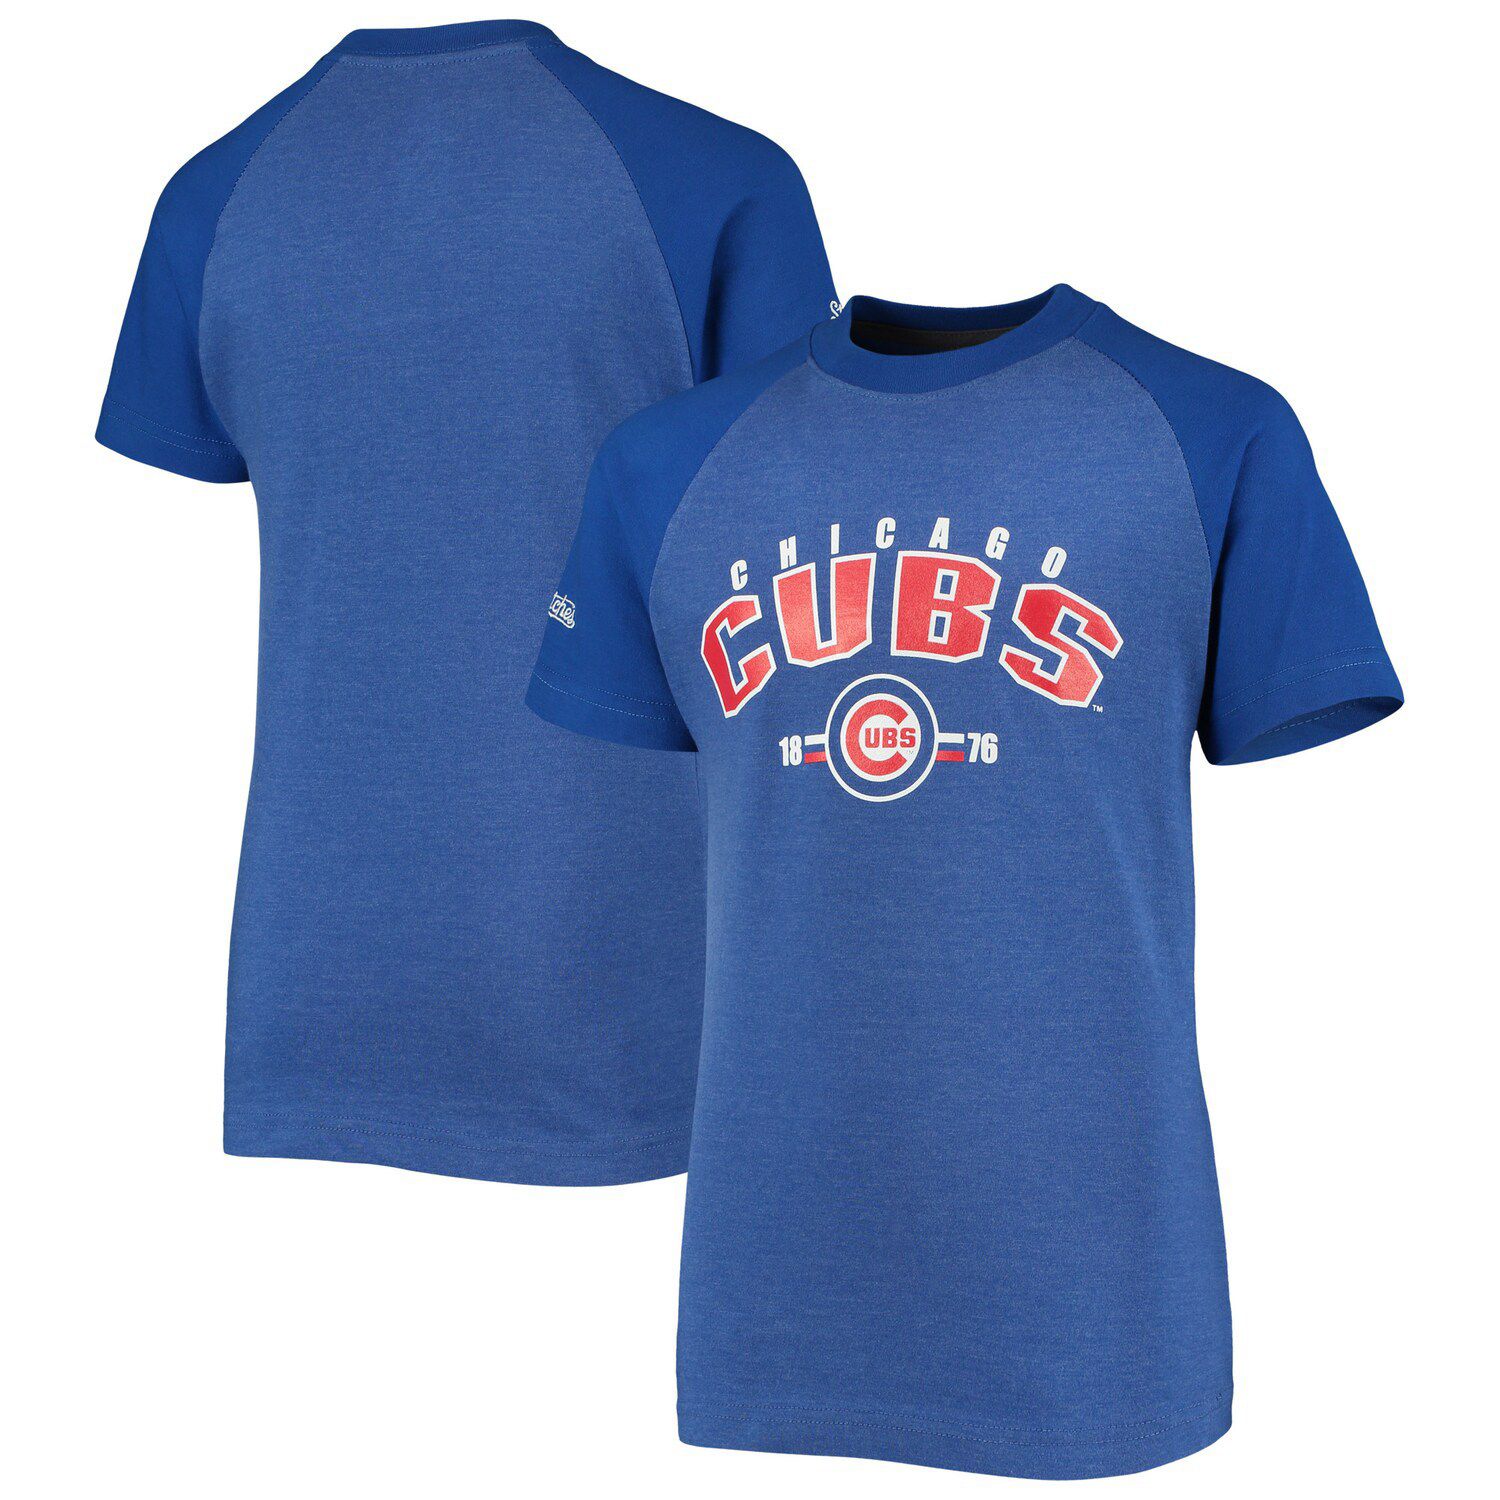 5t chicago cubs shirt